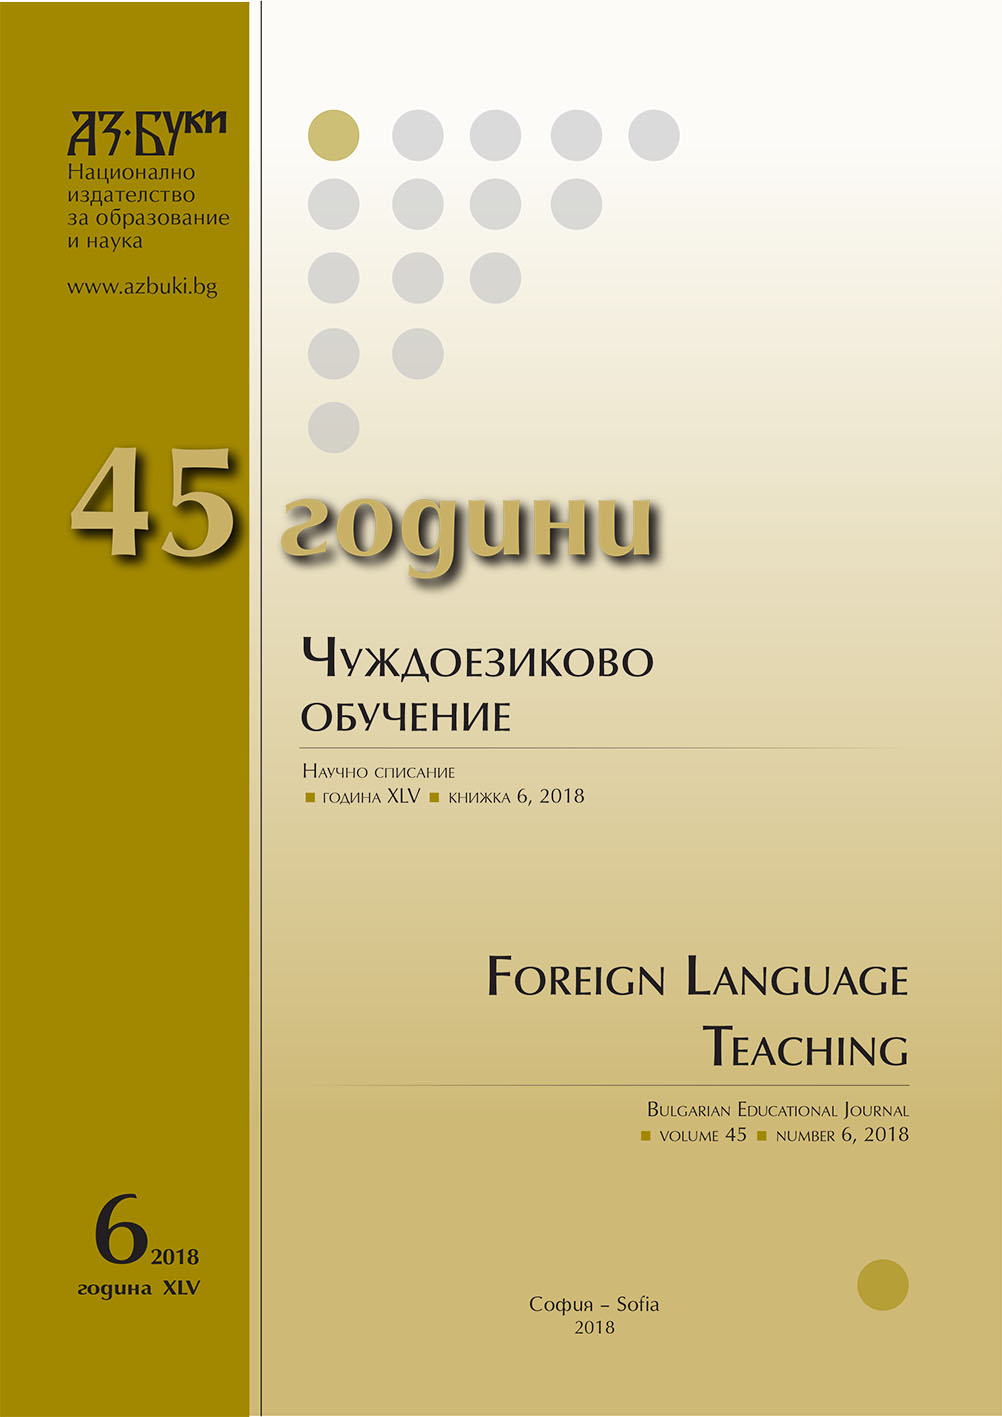 Трета международна научна конференция „Компютърната лингвистика в България“ – традиции и перспективи